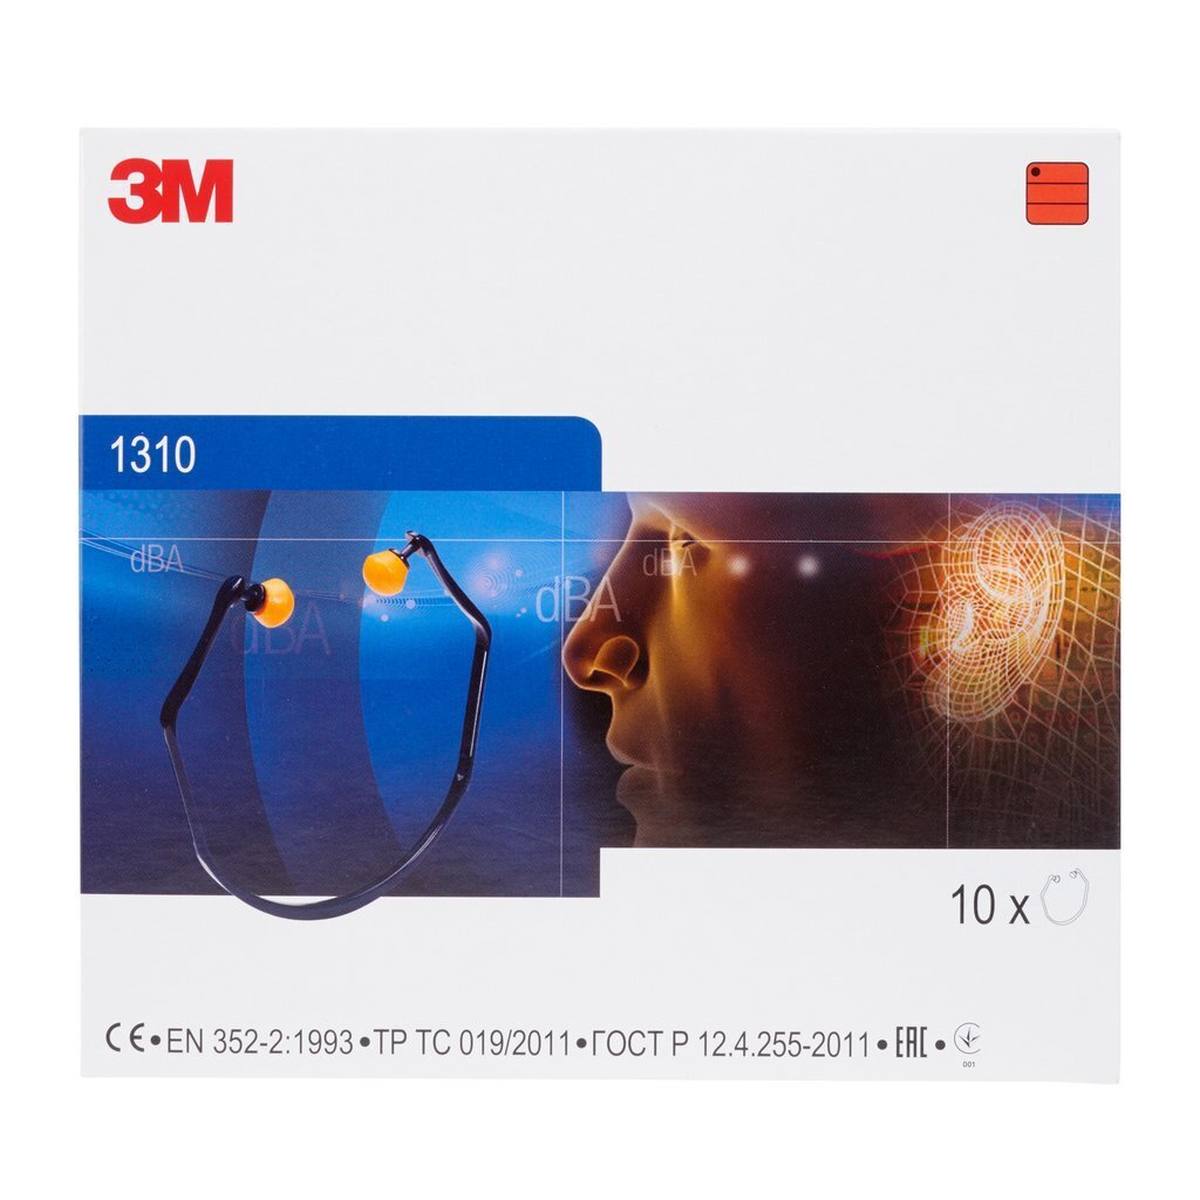 3M Bügel-Gehörschutz 1310 ab 3,10 €